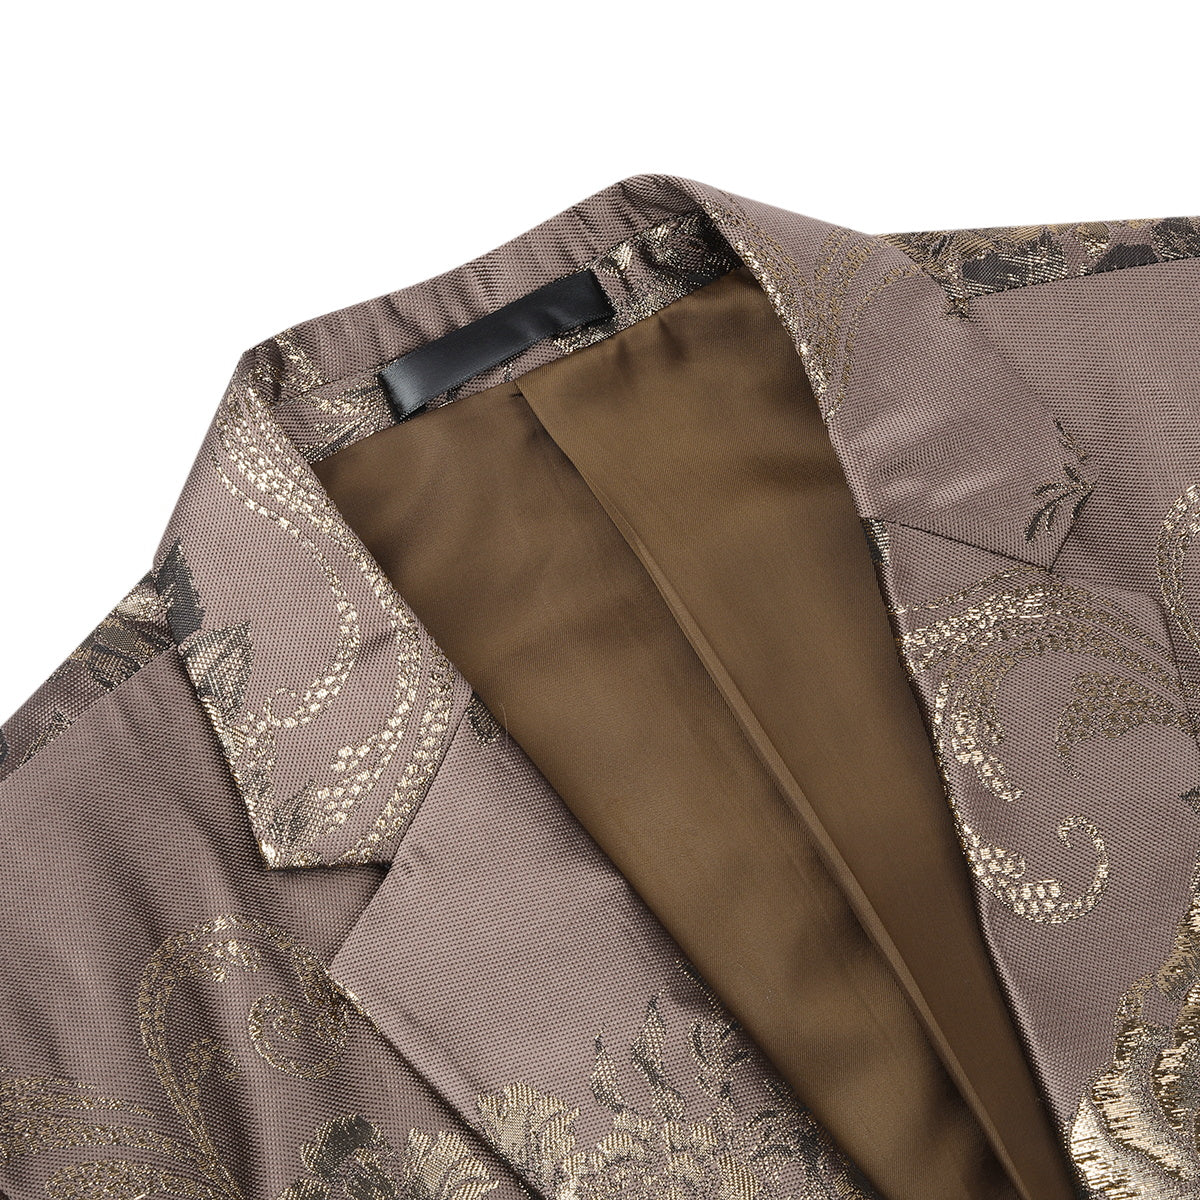 Men's Floral Suit Jacket Printed Blazer Gold